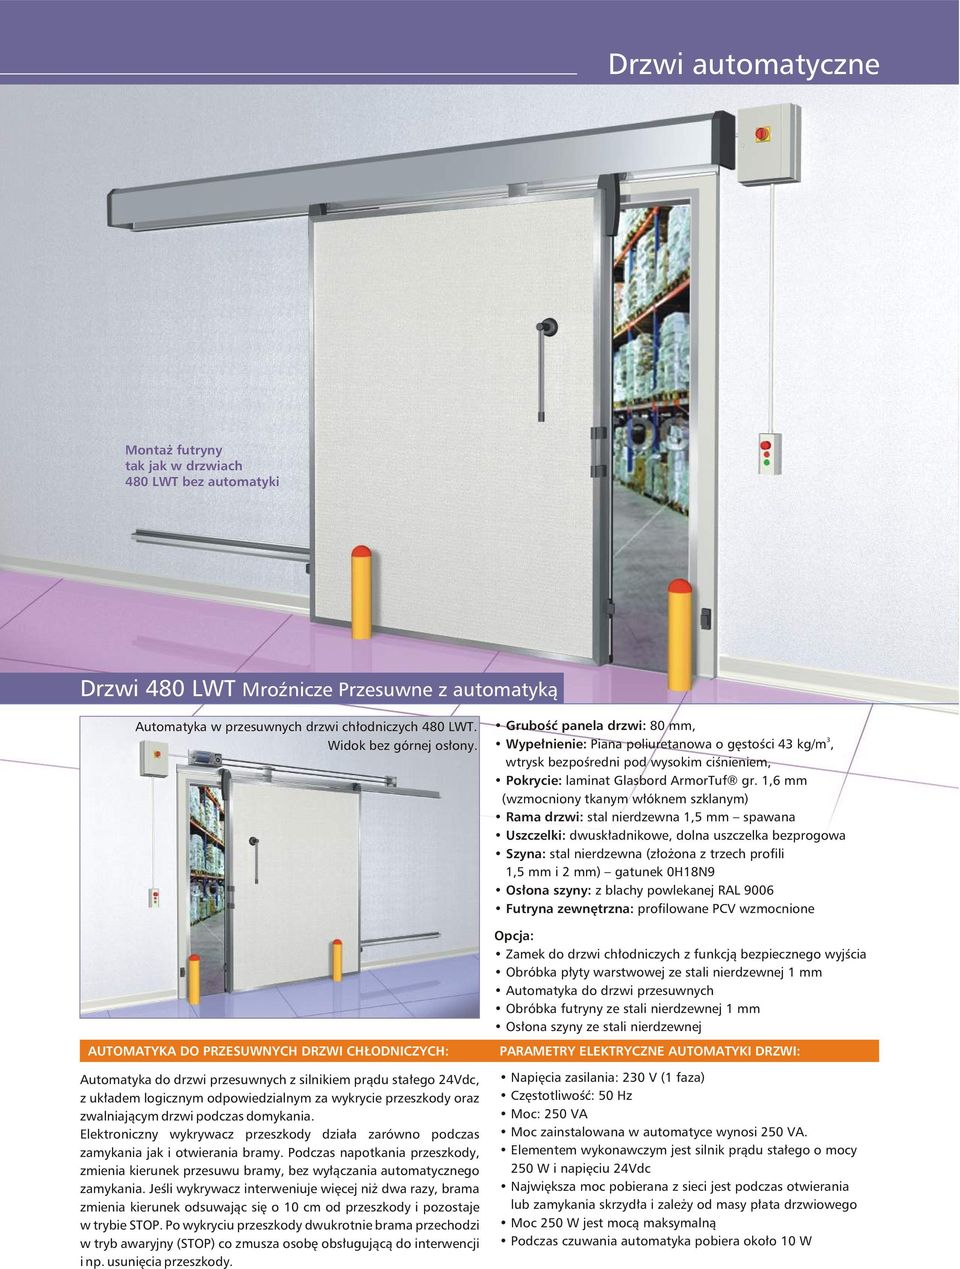 Drzwi. technologiczne i sanitarne do kontrolowanej atmosfery automatyczne -  PDF Darmowe pobieranie